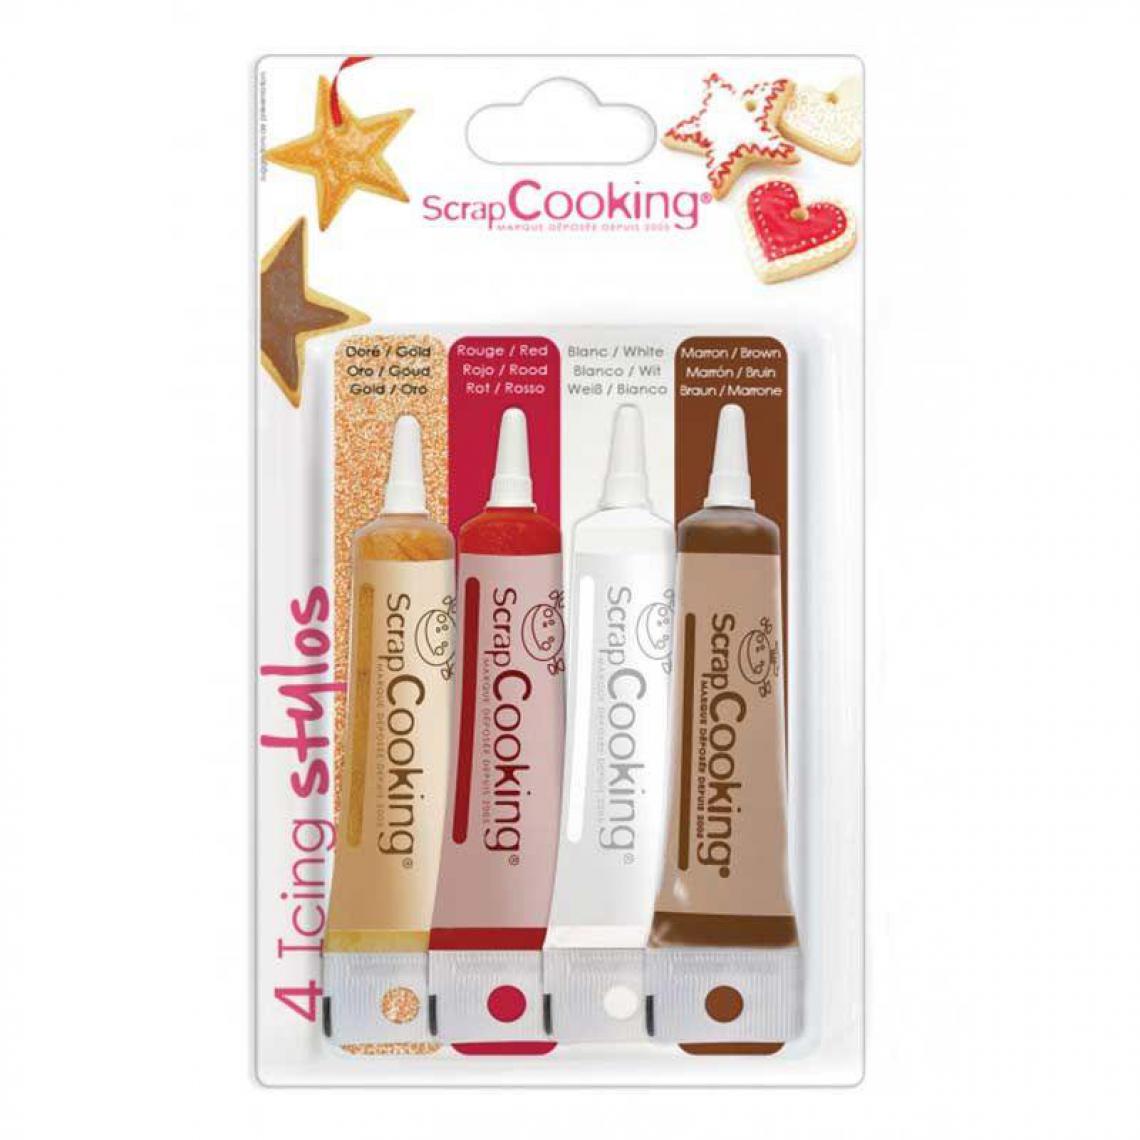 Scrapcooking - 4 stylos de glaçage or, chocolat, blanc et rouge - Kits créatifs